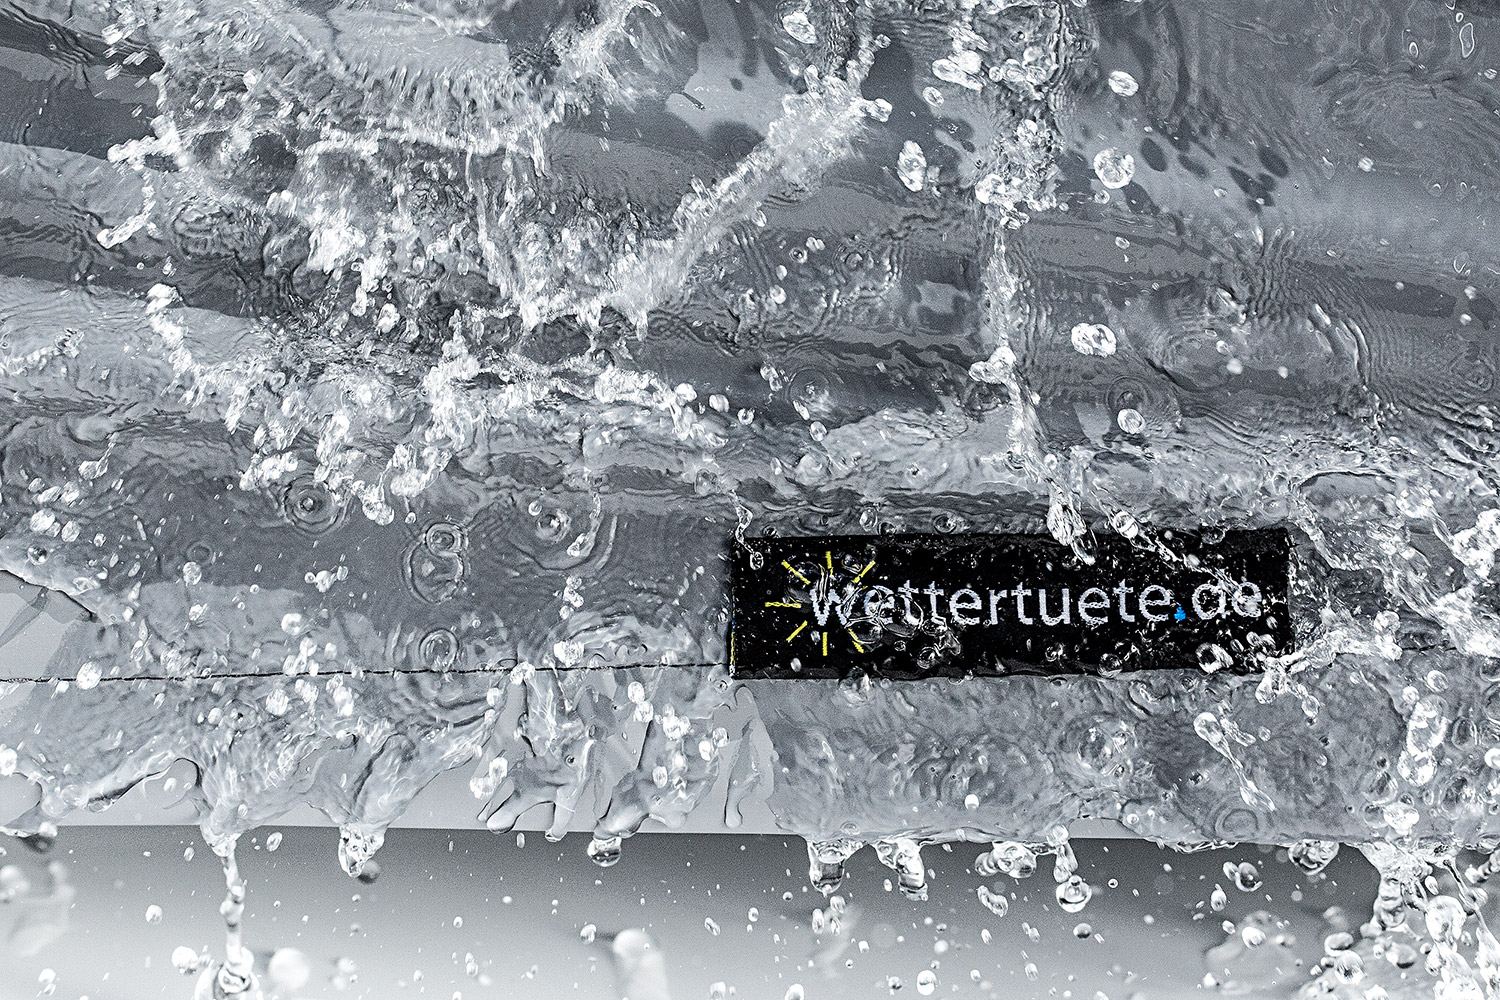 Impermeables, duraderas, transpirables y equipadas con protección UV: Capotas de Wettertuete.de